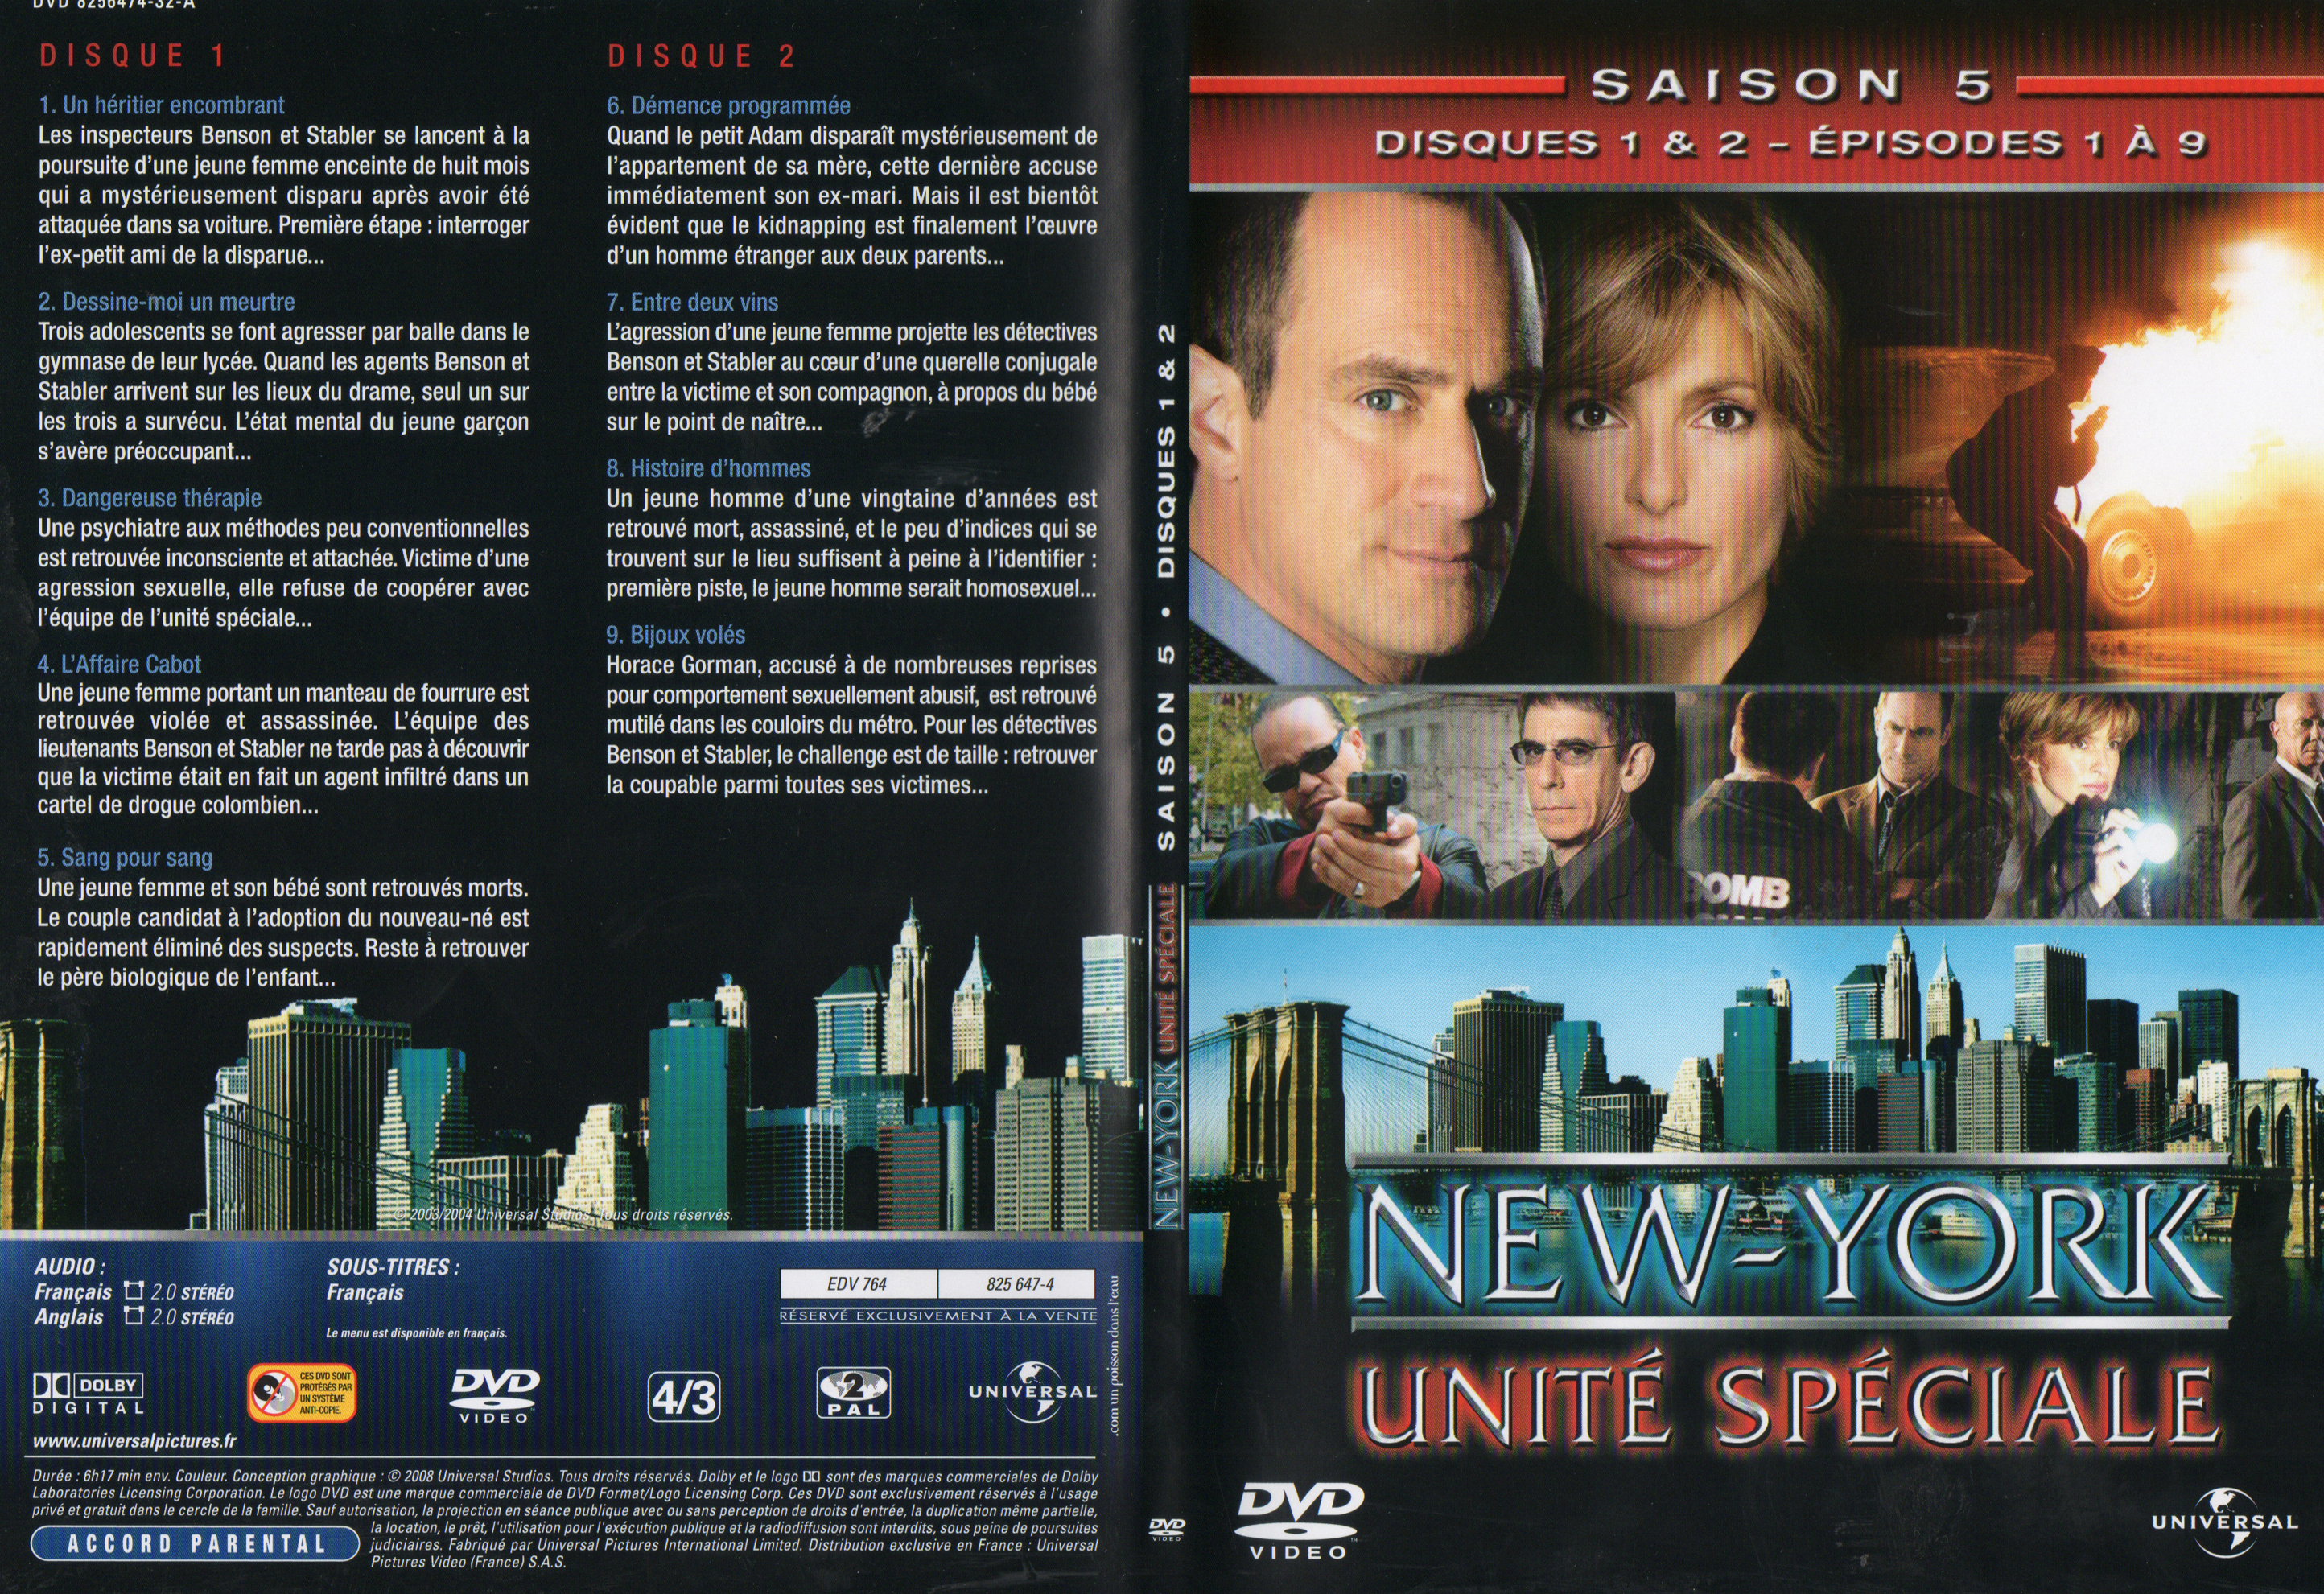 Jaquette DVD New York unit spciale saison 5 DVD 1